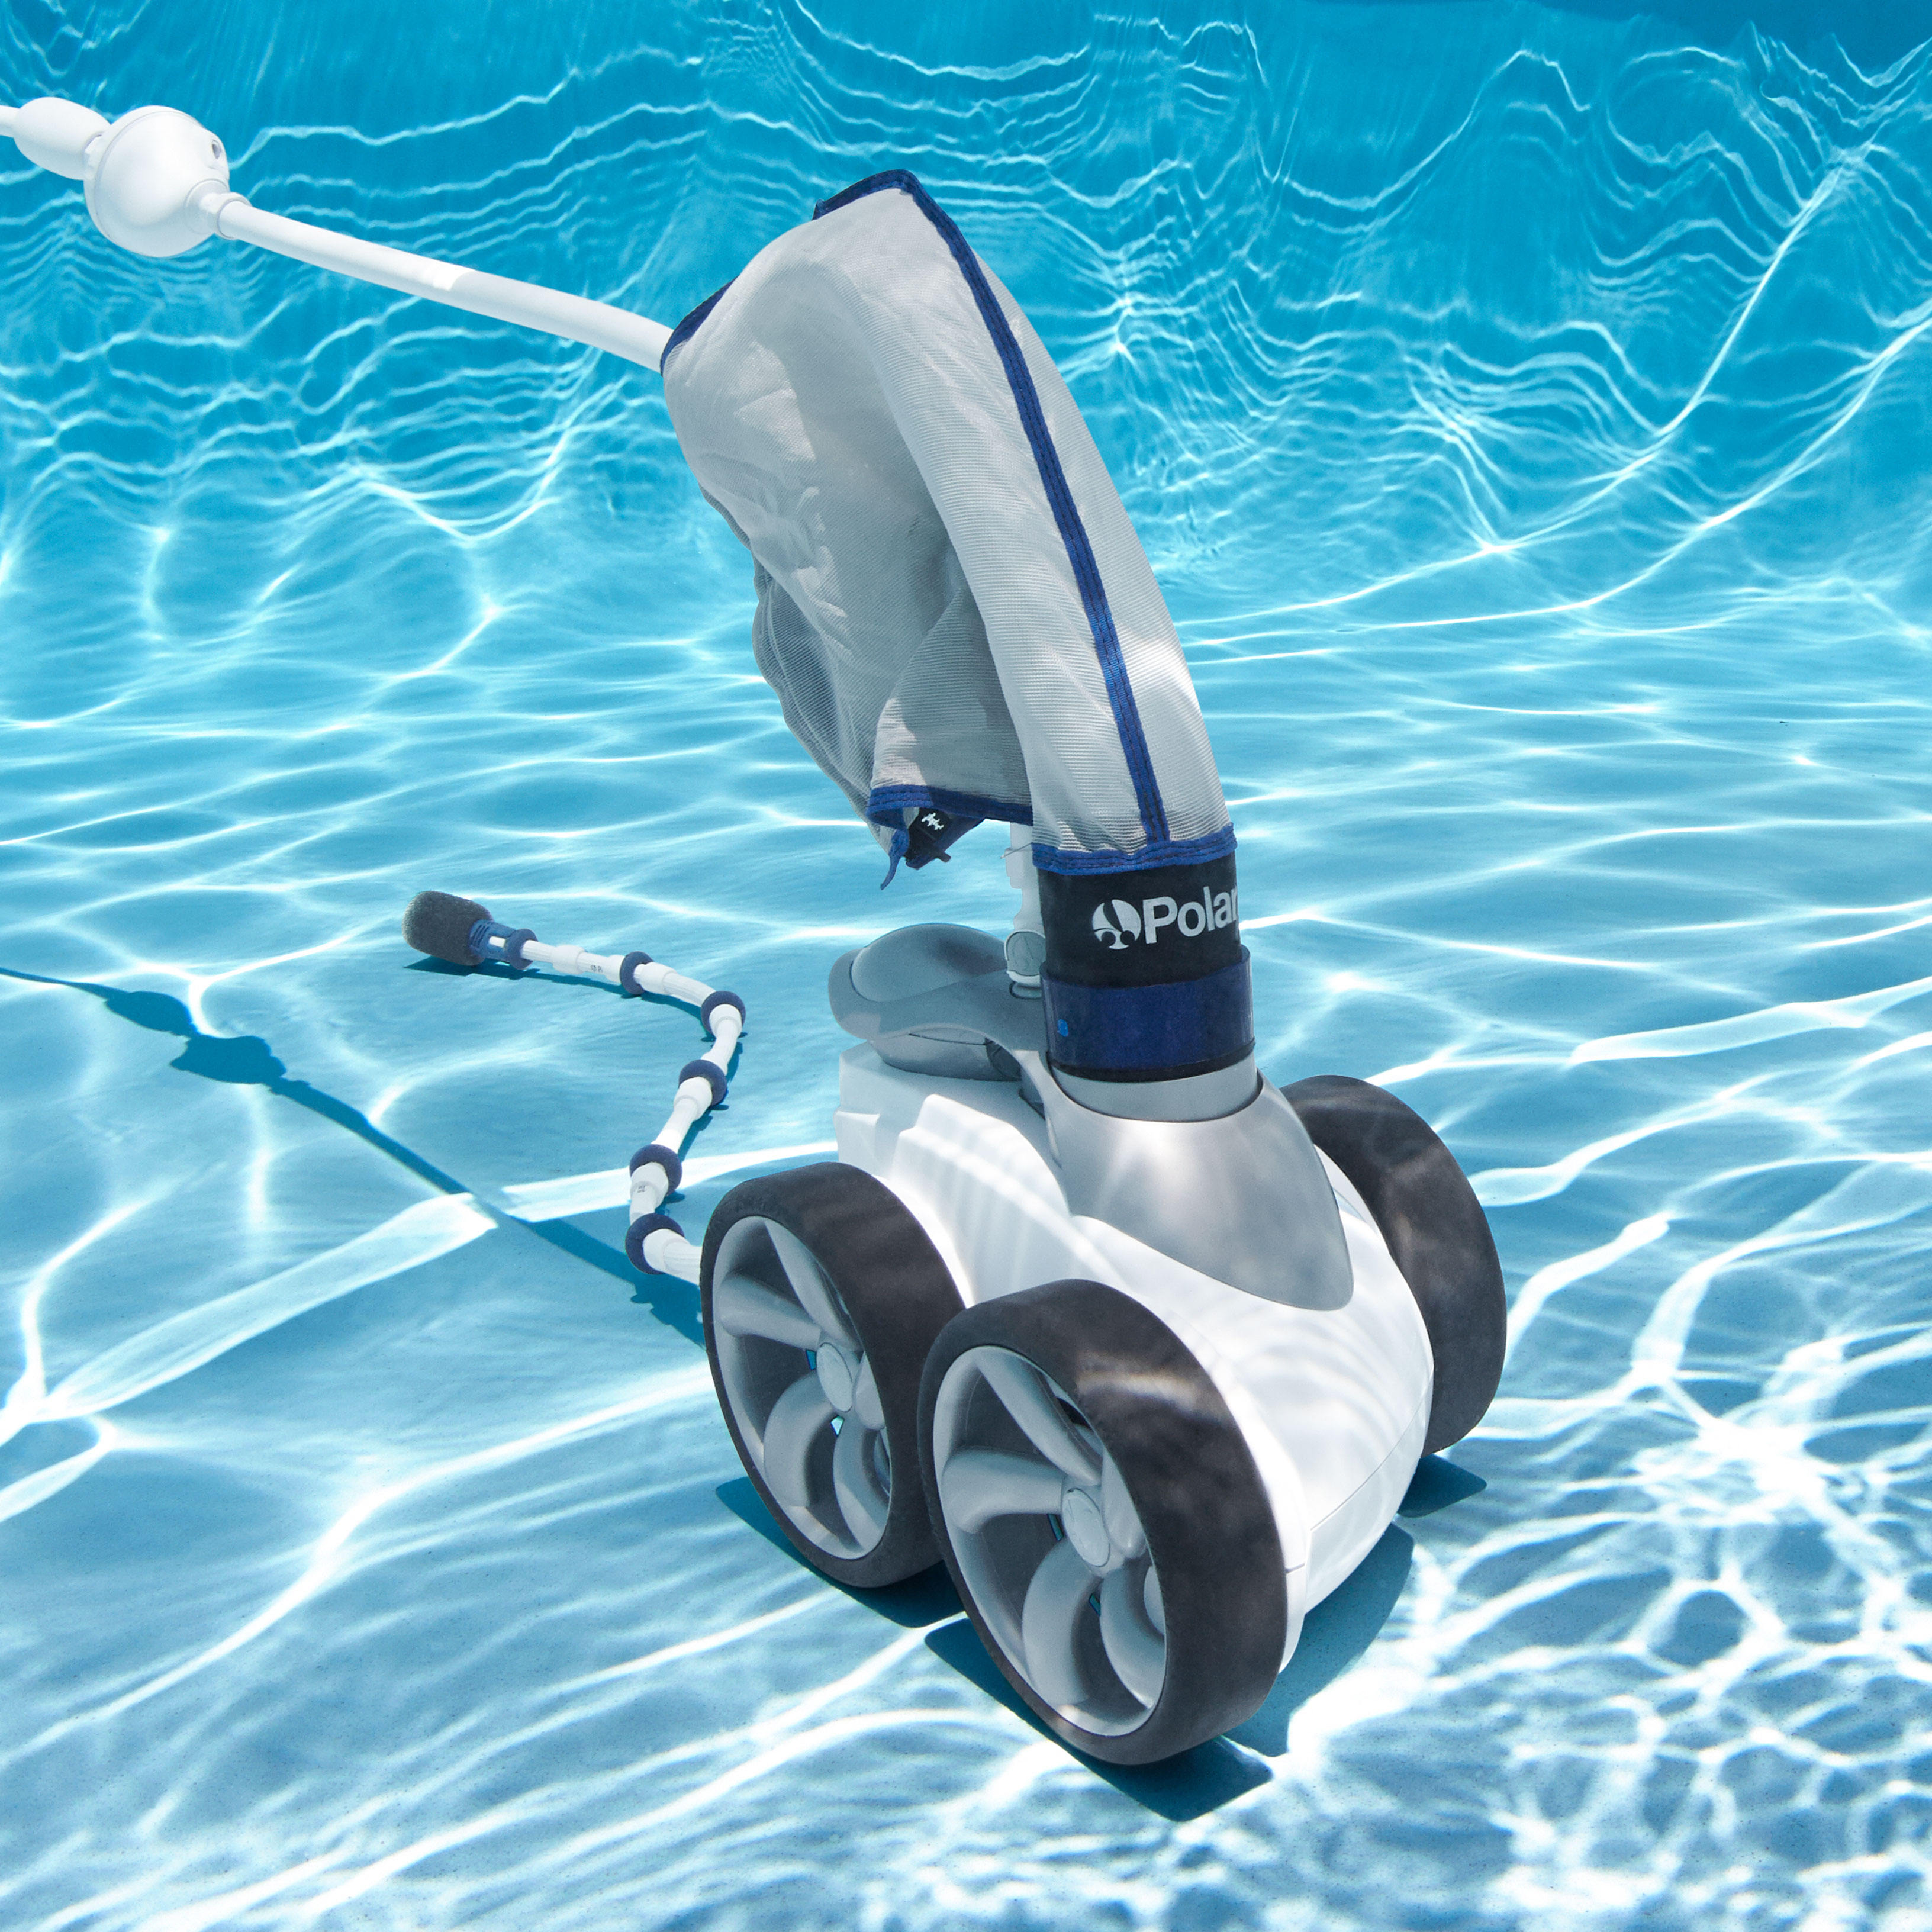 Polaris 3900 Sport Pressure Pool Cleaner Under Water